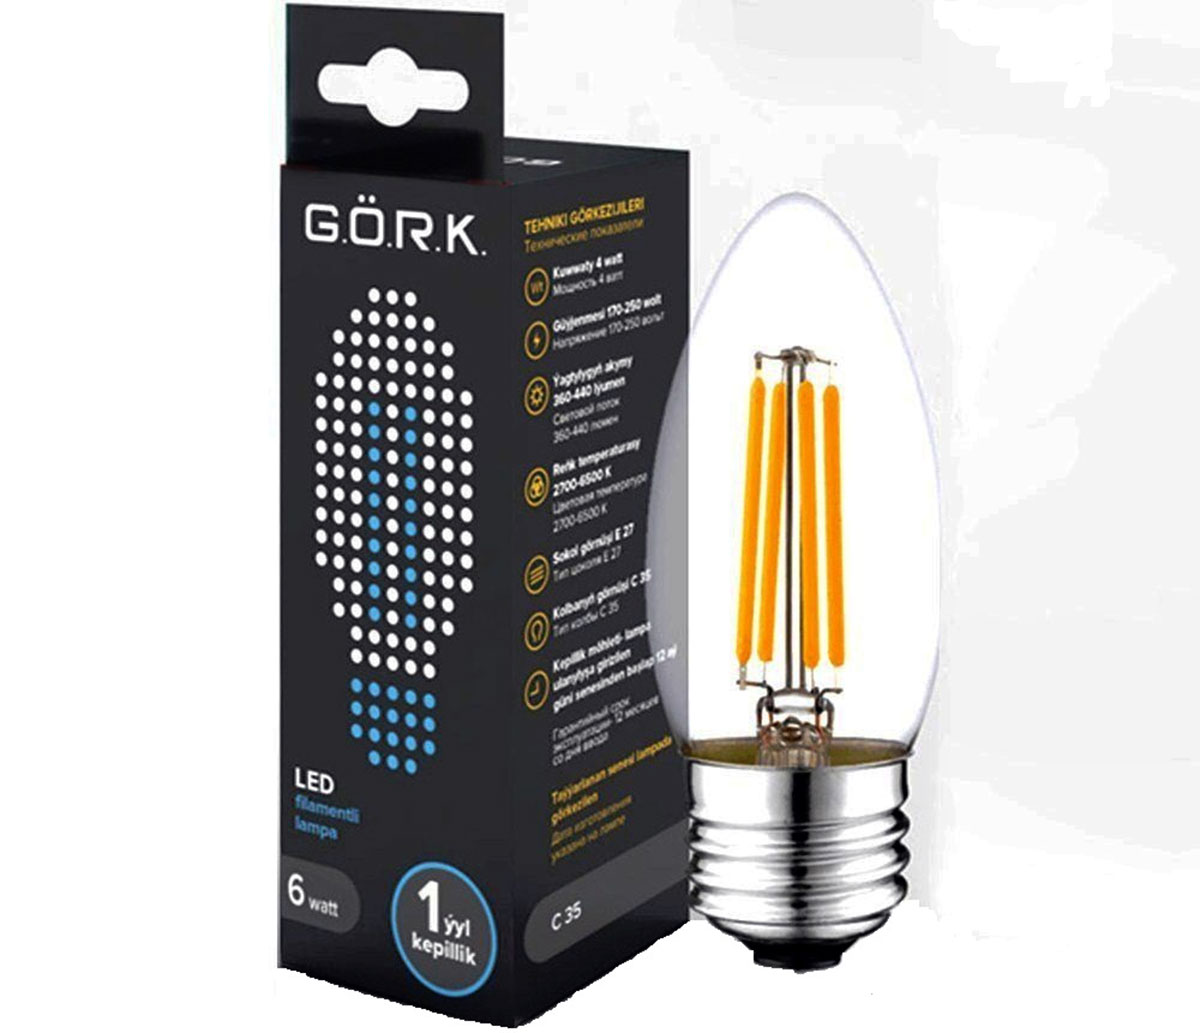 Türkmen kompaniýasy «GÖRK» filament lampalarynyň täze görnüşlerini önümçiligine goşdy